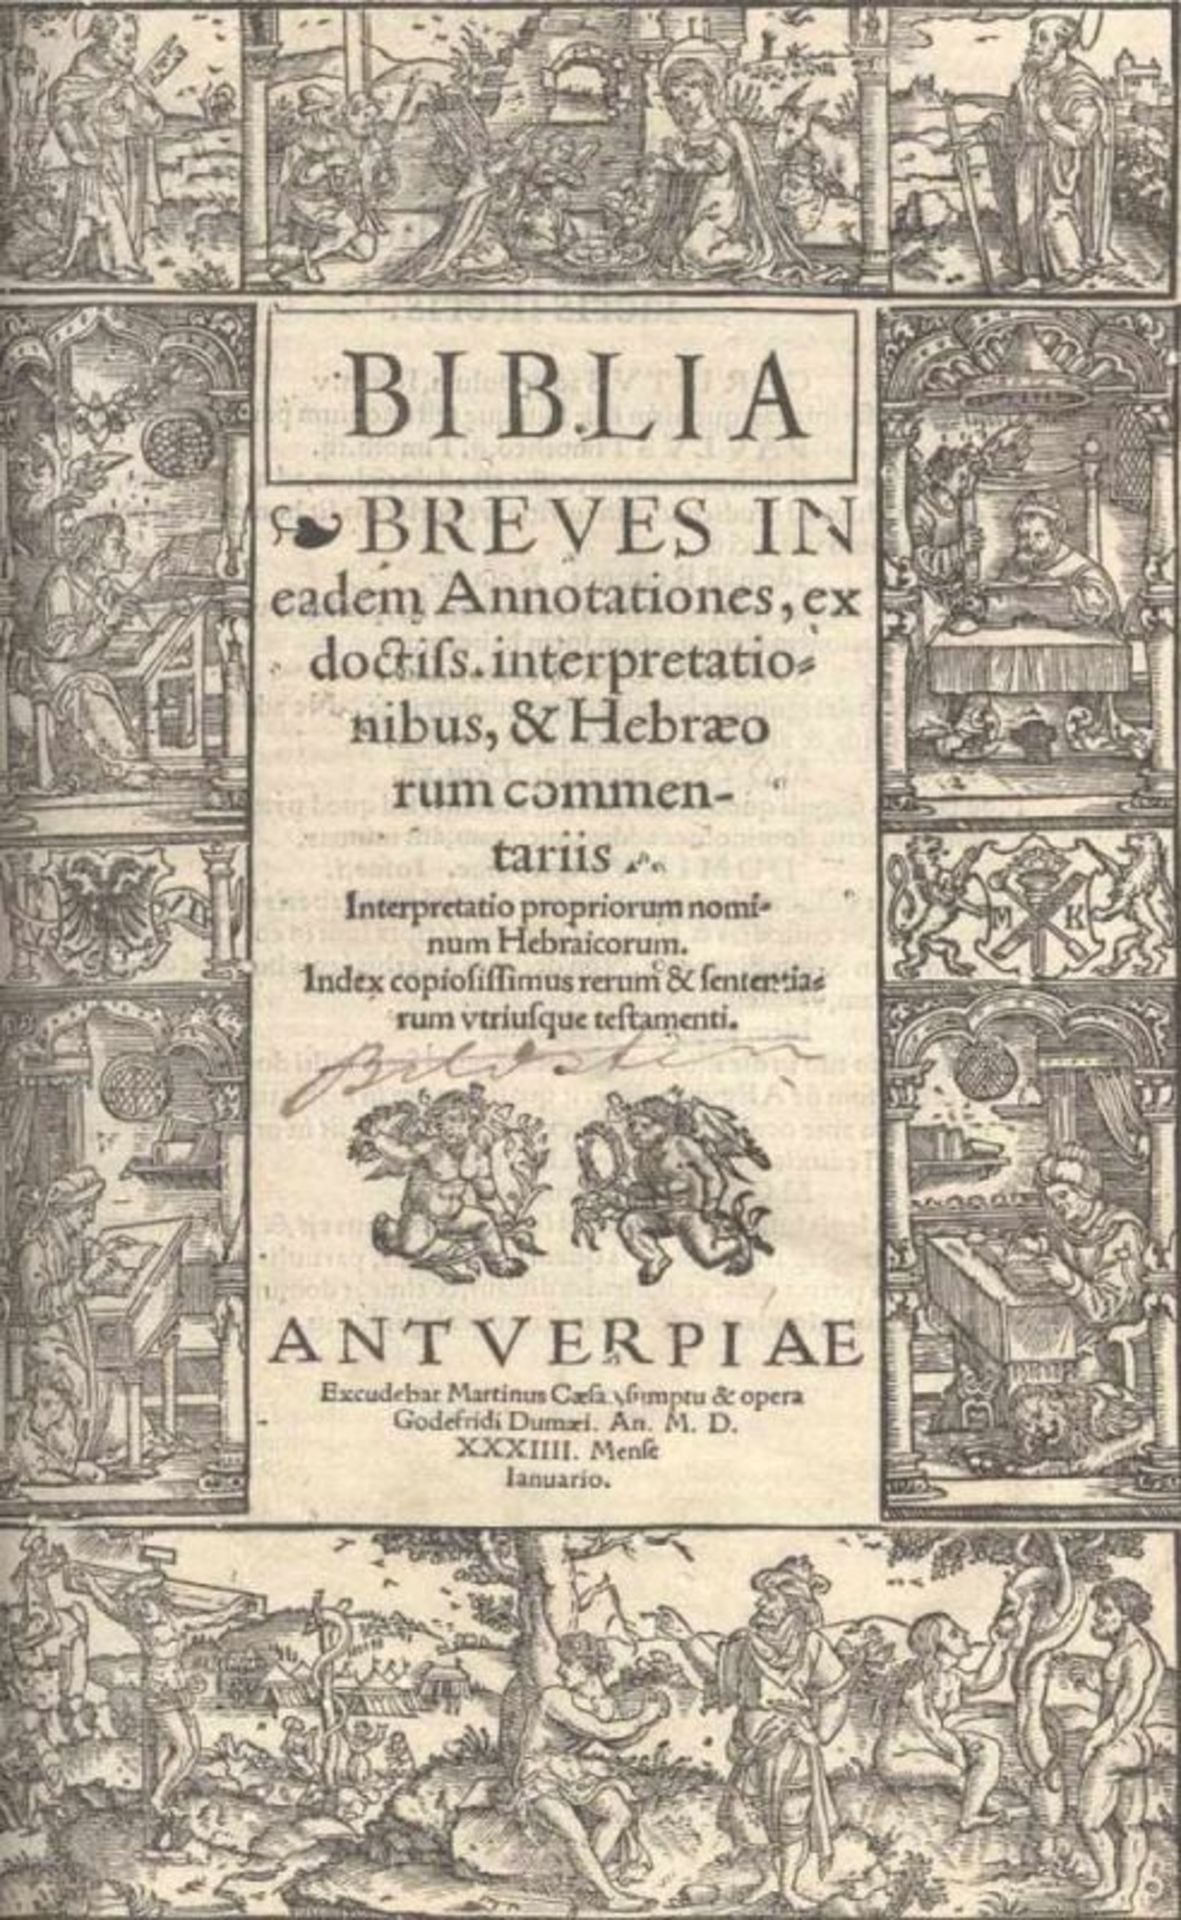 Biblia latina.Biblia. Breves in eadem annotationes ex doctiss. interpretationibus & hebraeorum